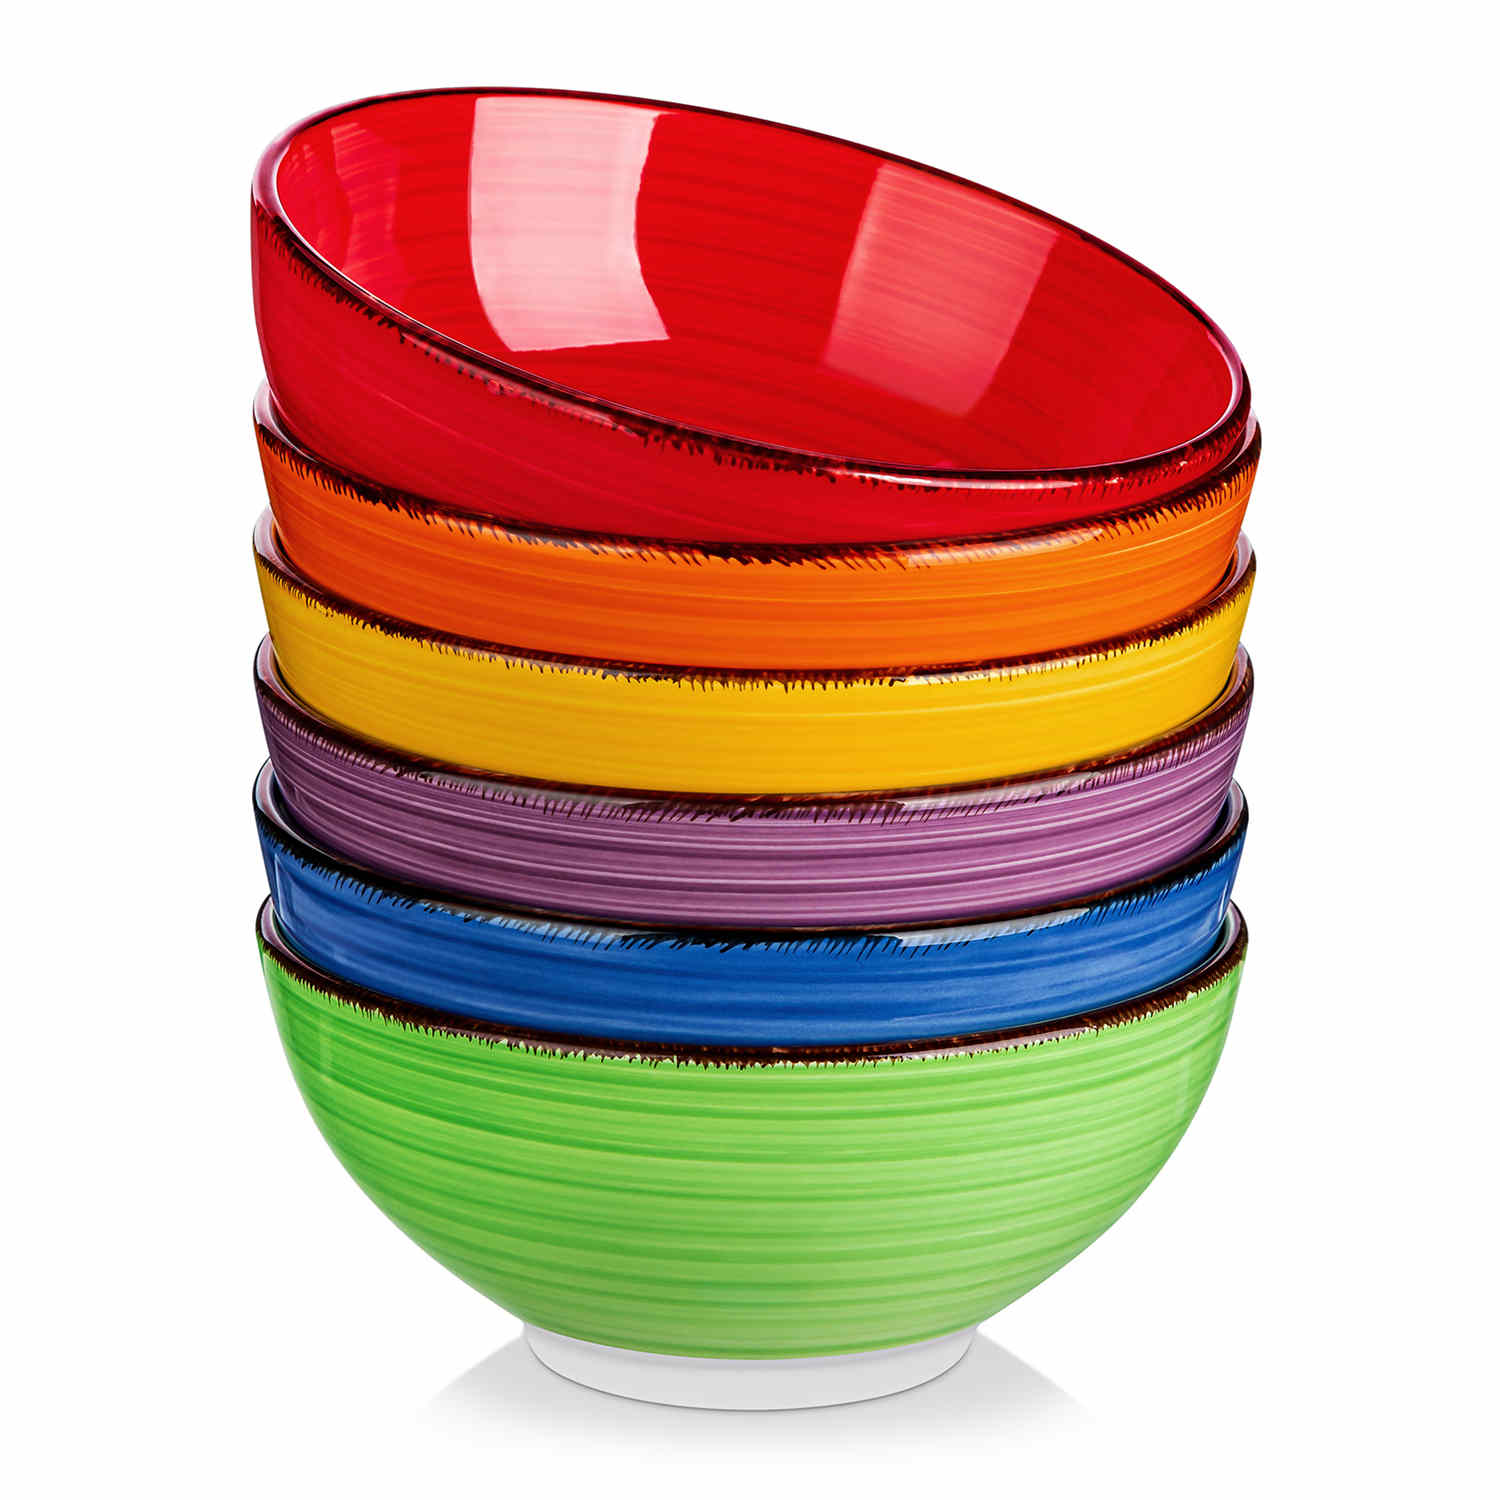 Bonita Cereal Bowls Set of 6 - Multicolor